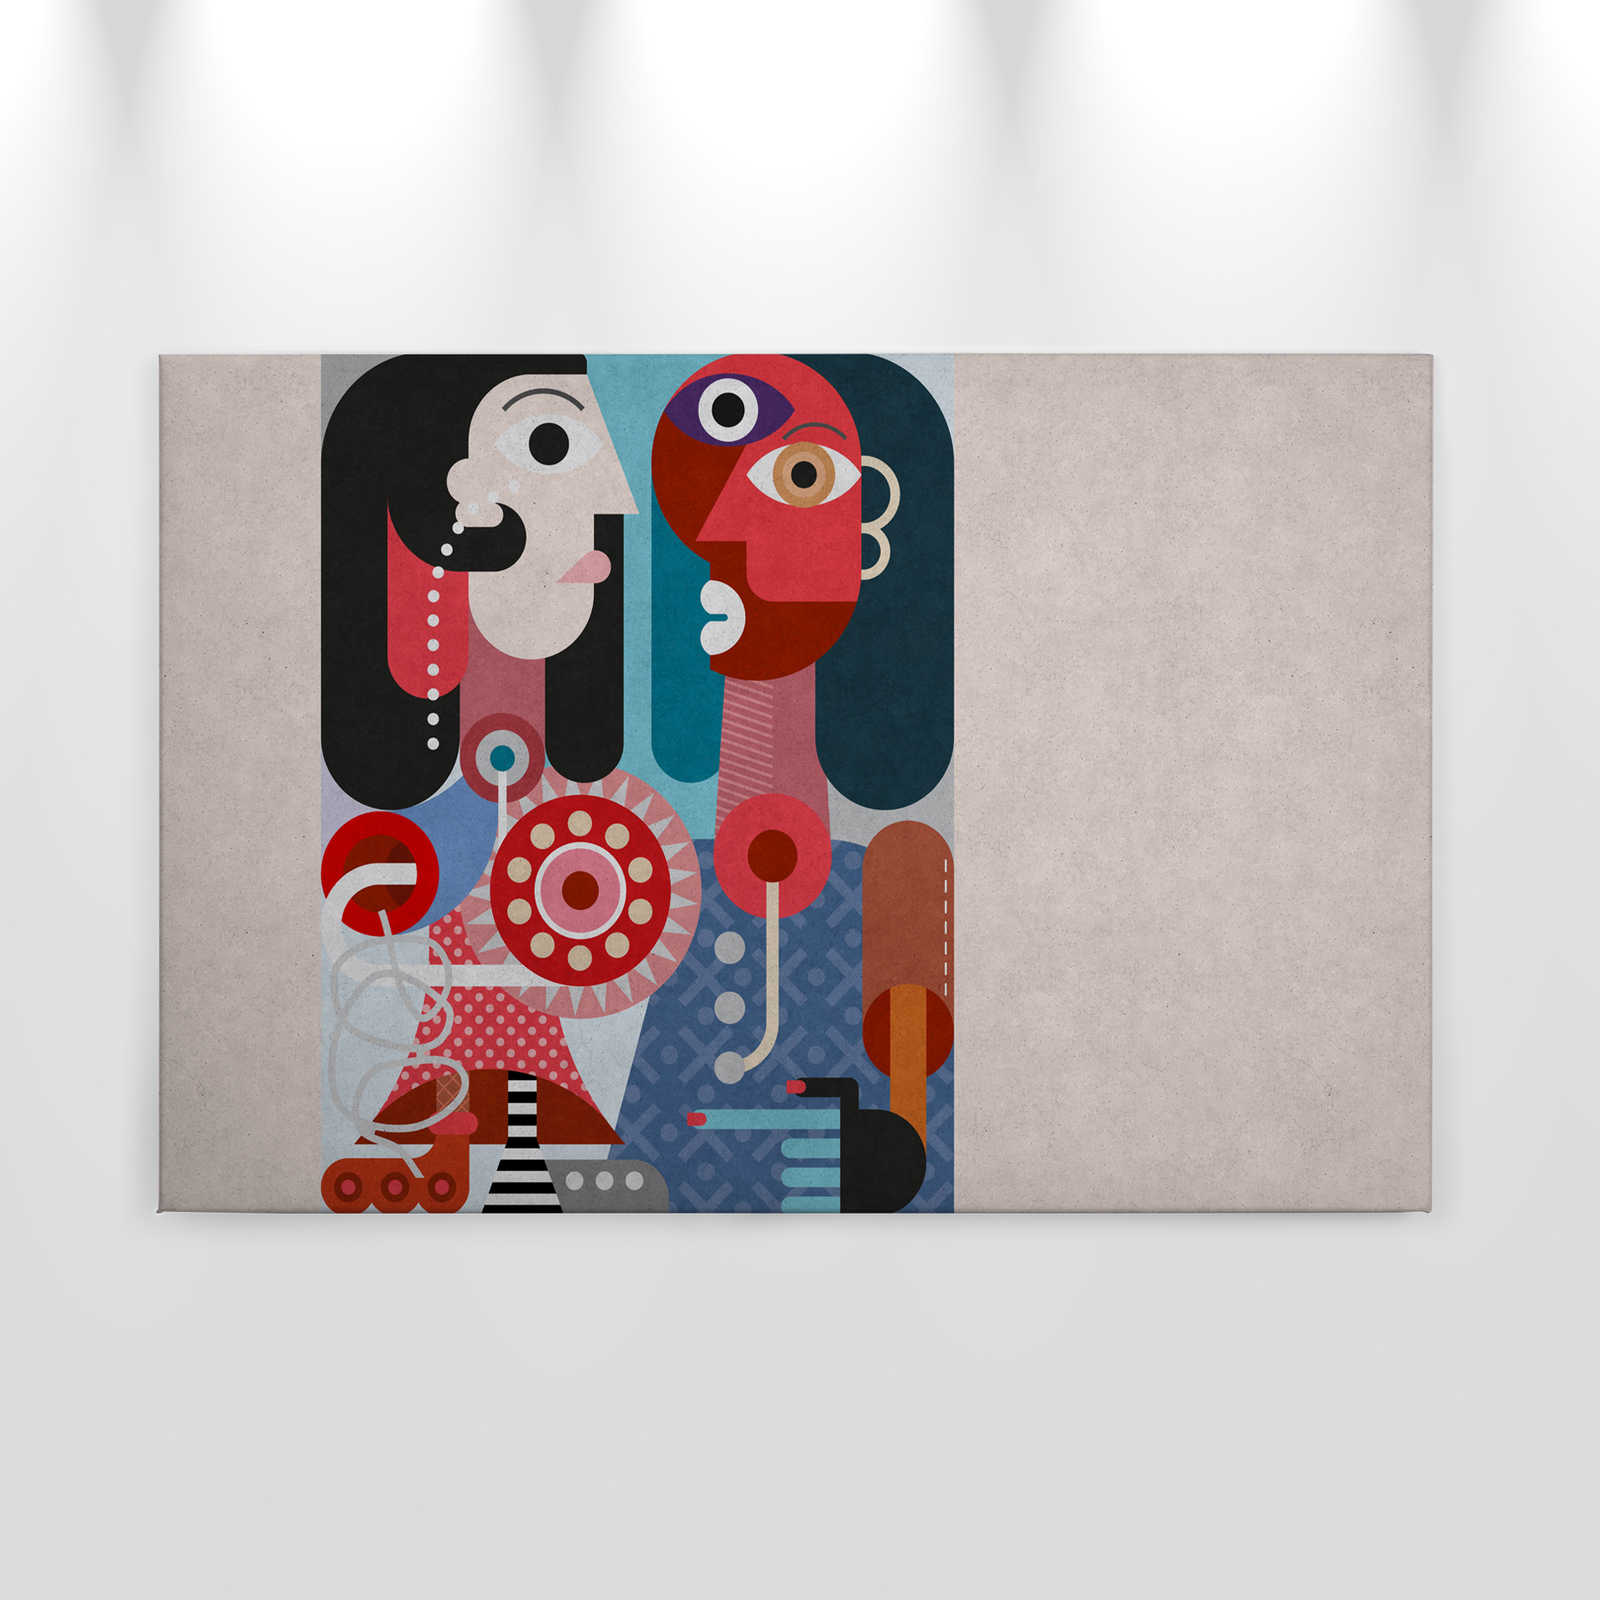             Couples 3 - Pop Art Couple toile en structure béton - 0,90 m x 0,60 m
        